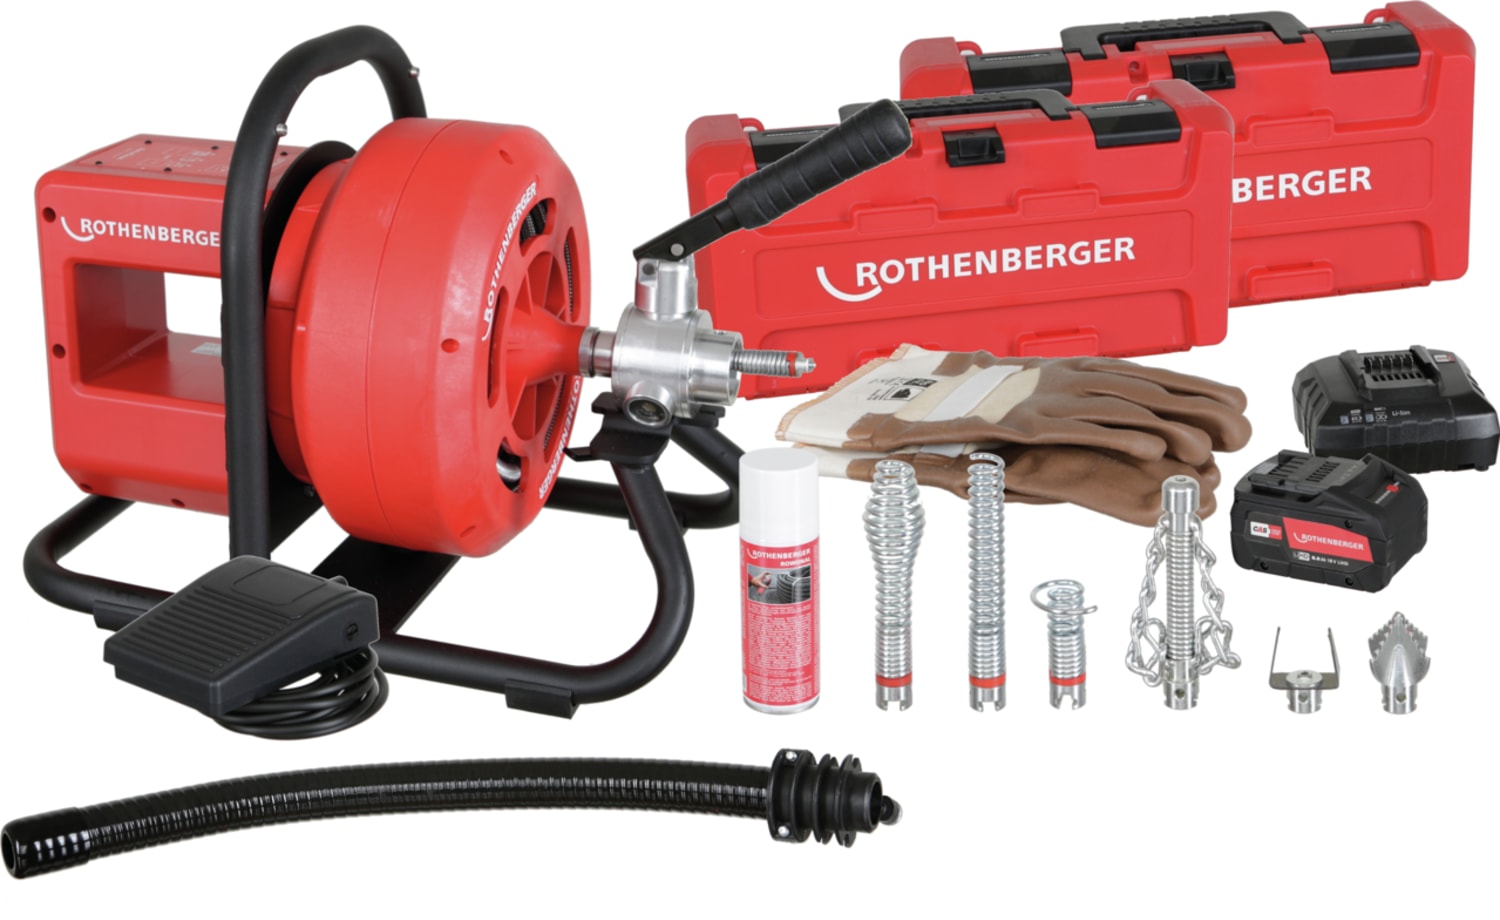 Rothenberger Rodrum VarioClean, spiral guide hose, gloves, 8.0Ah 18V battery, charger & tool set 16mm 1000003414